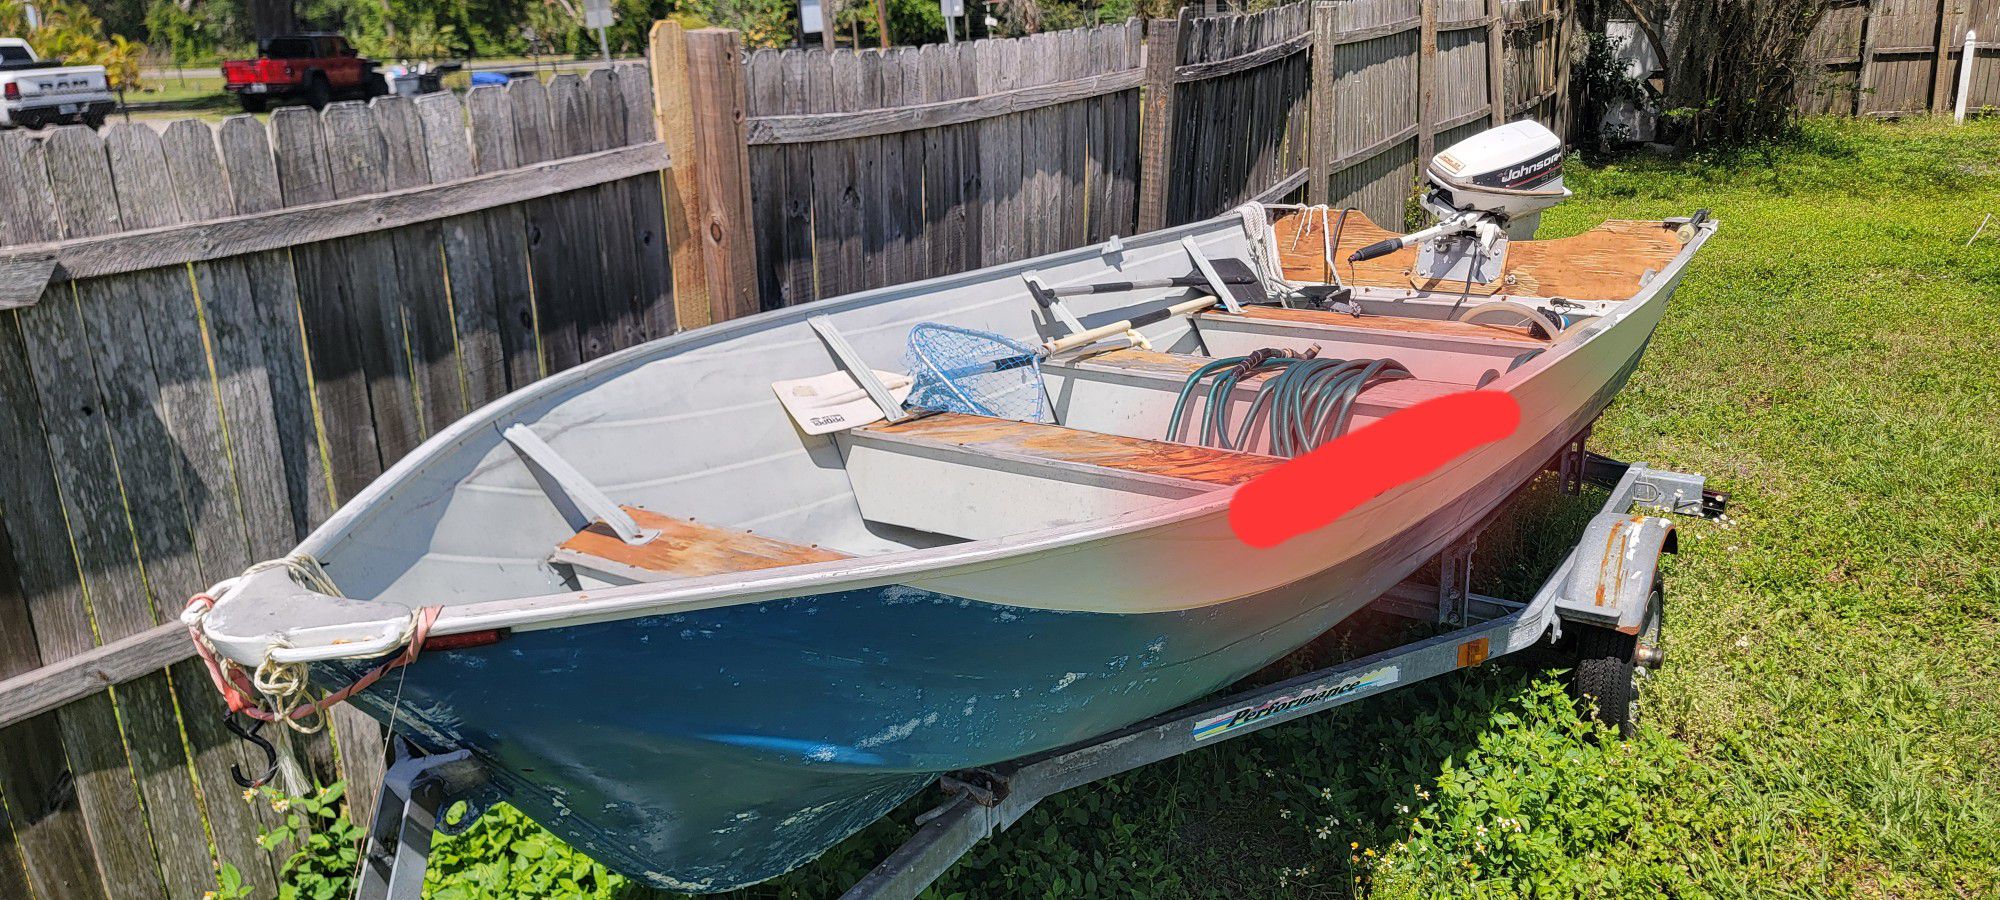 Aluminum V Bottom 14' Boat $2500 OBO